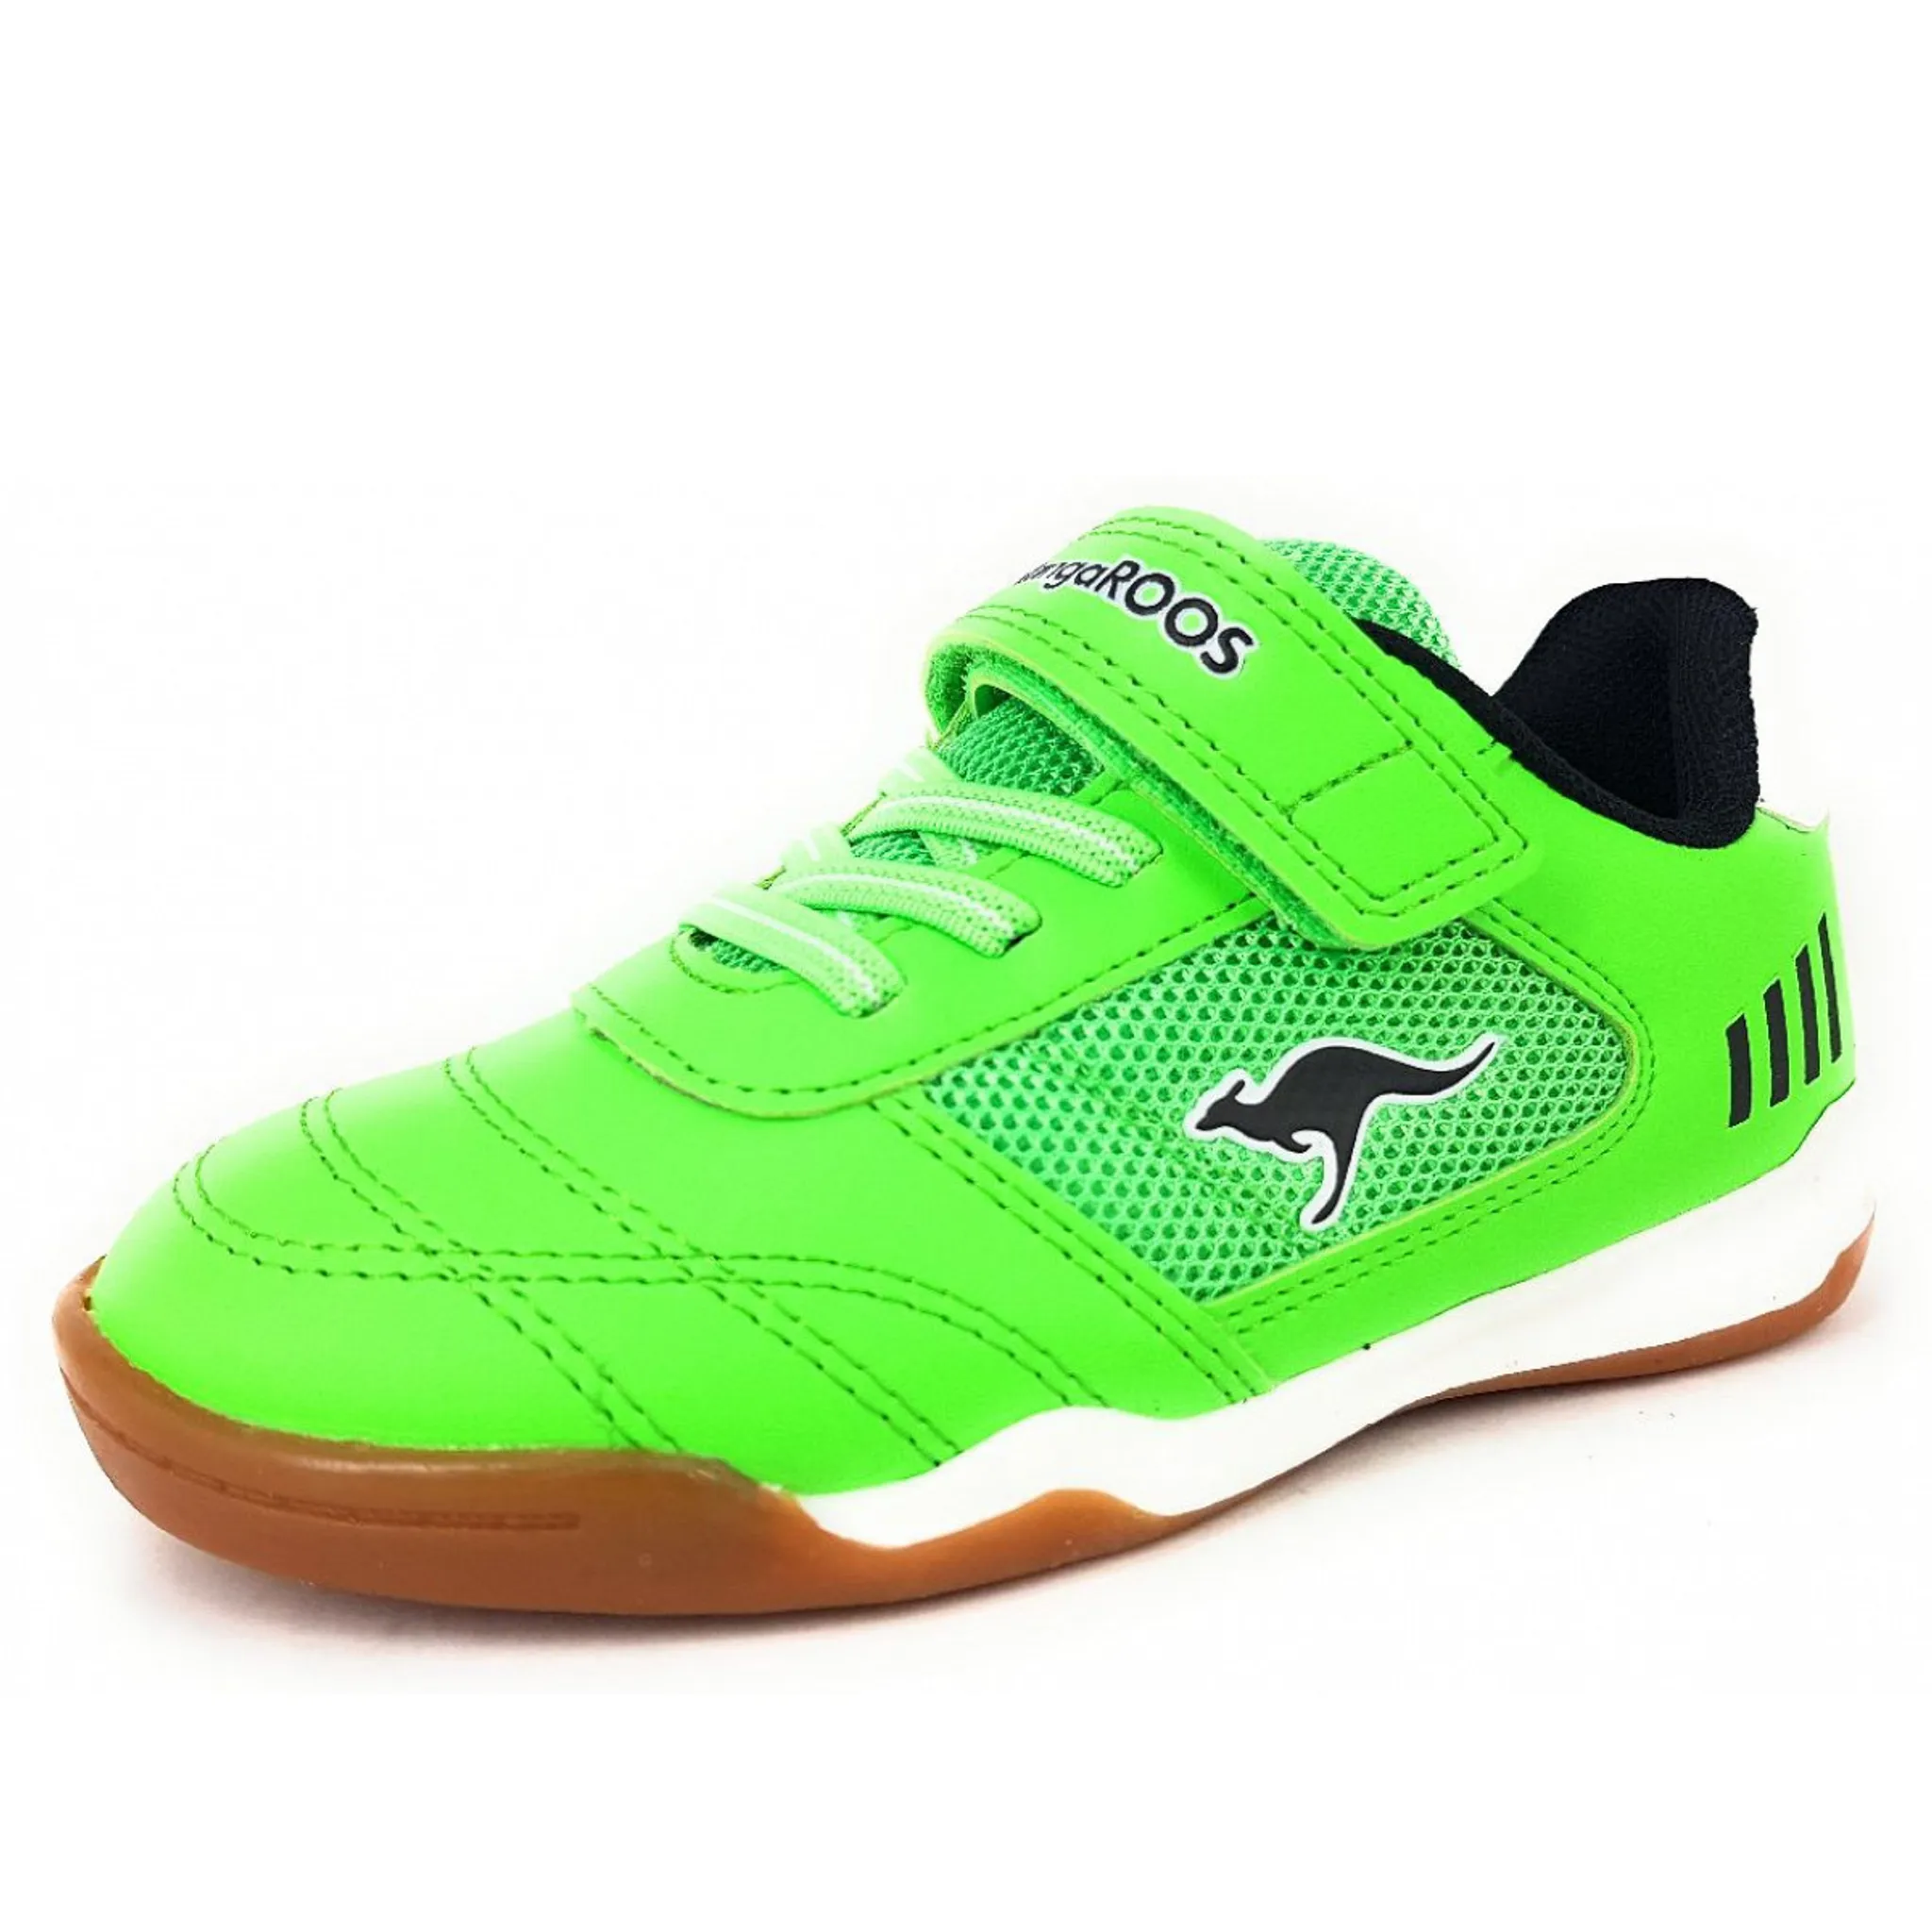 KangaRoos Sneaker Größe 31, Farbe: neon